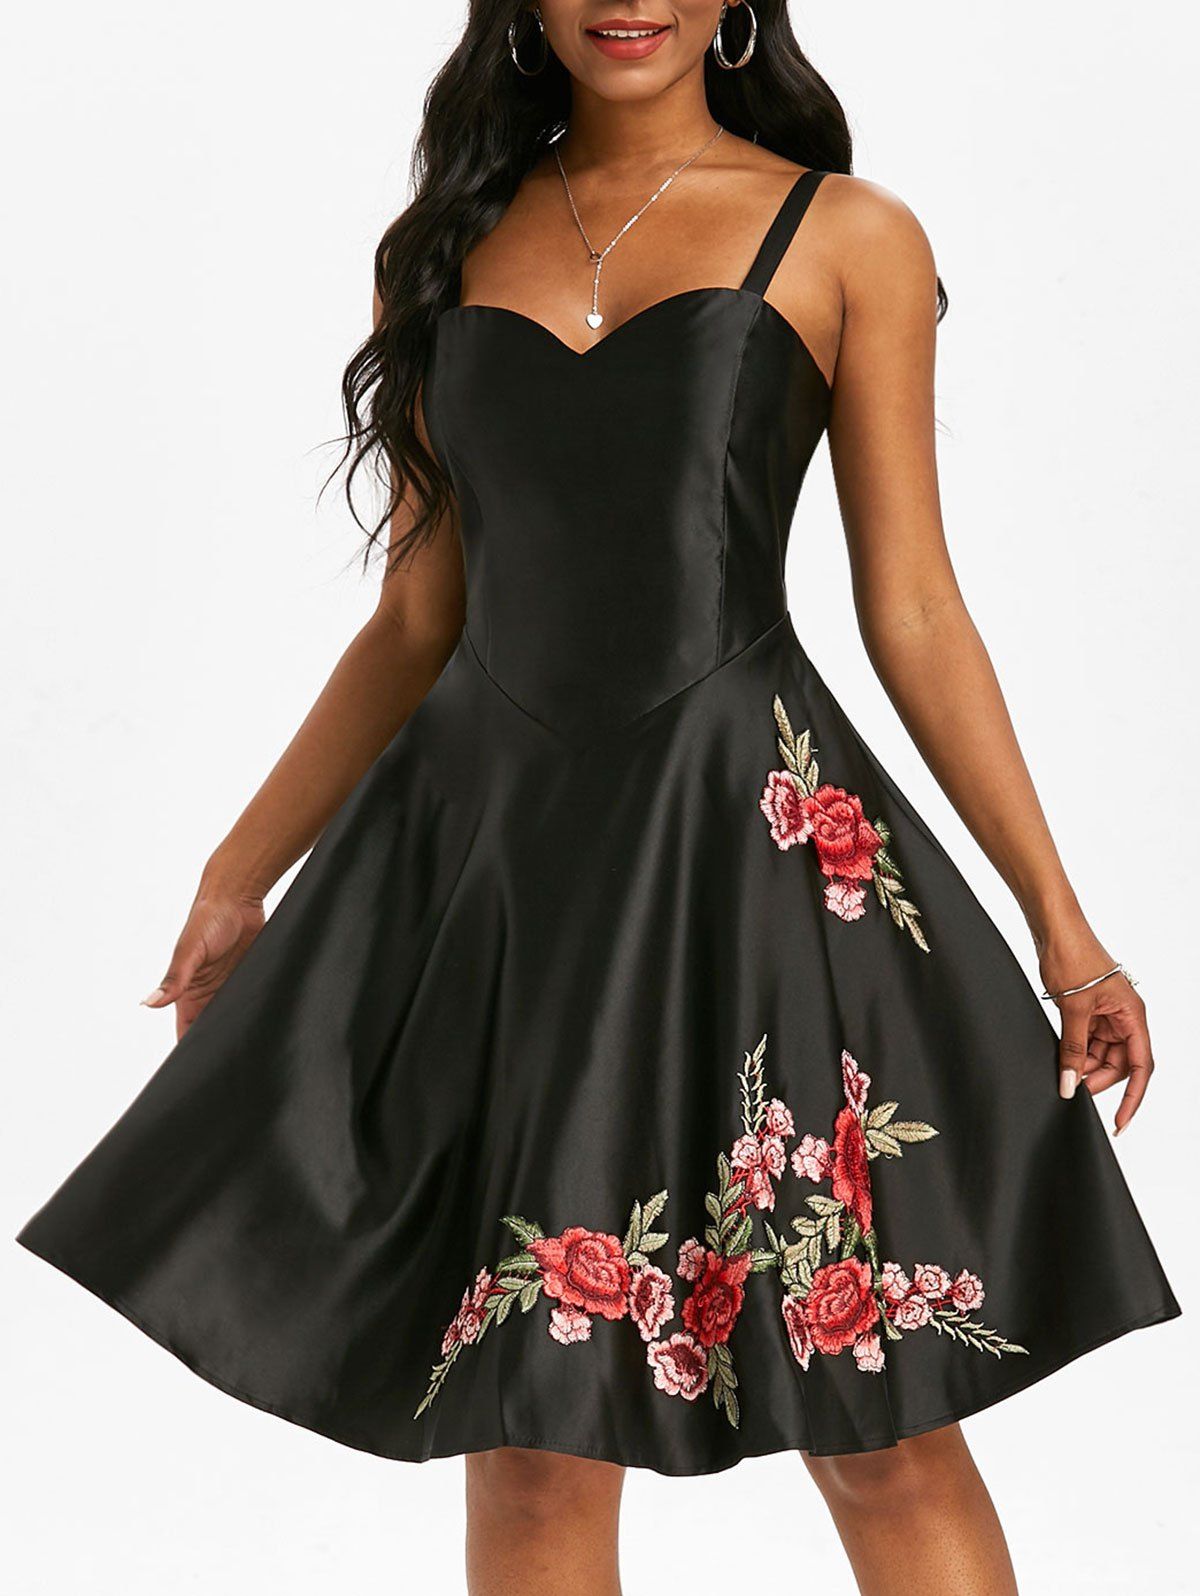 Applique Flower Party A Line Dress - BLACK XL